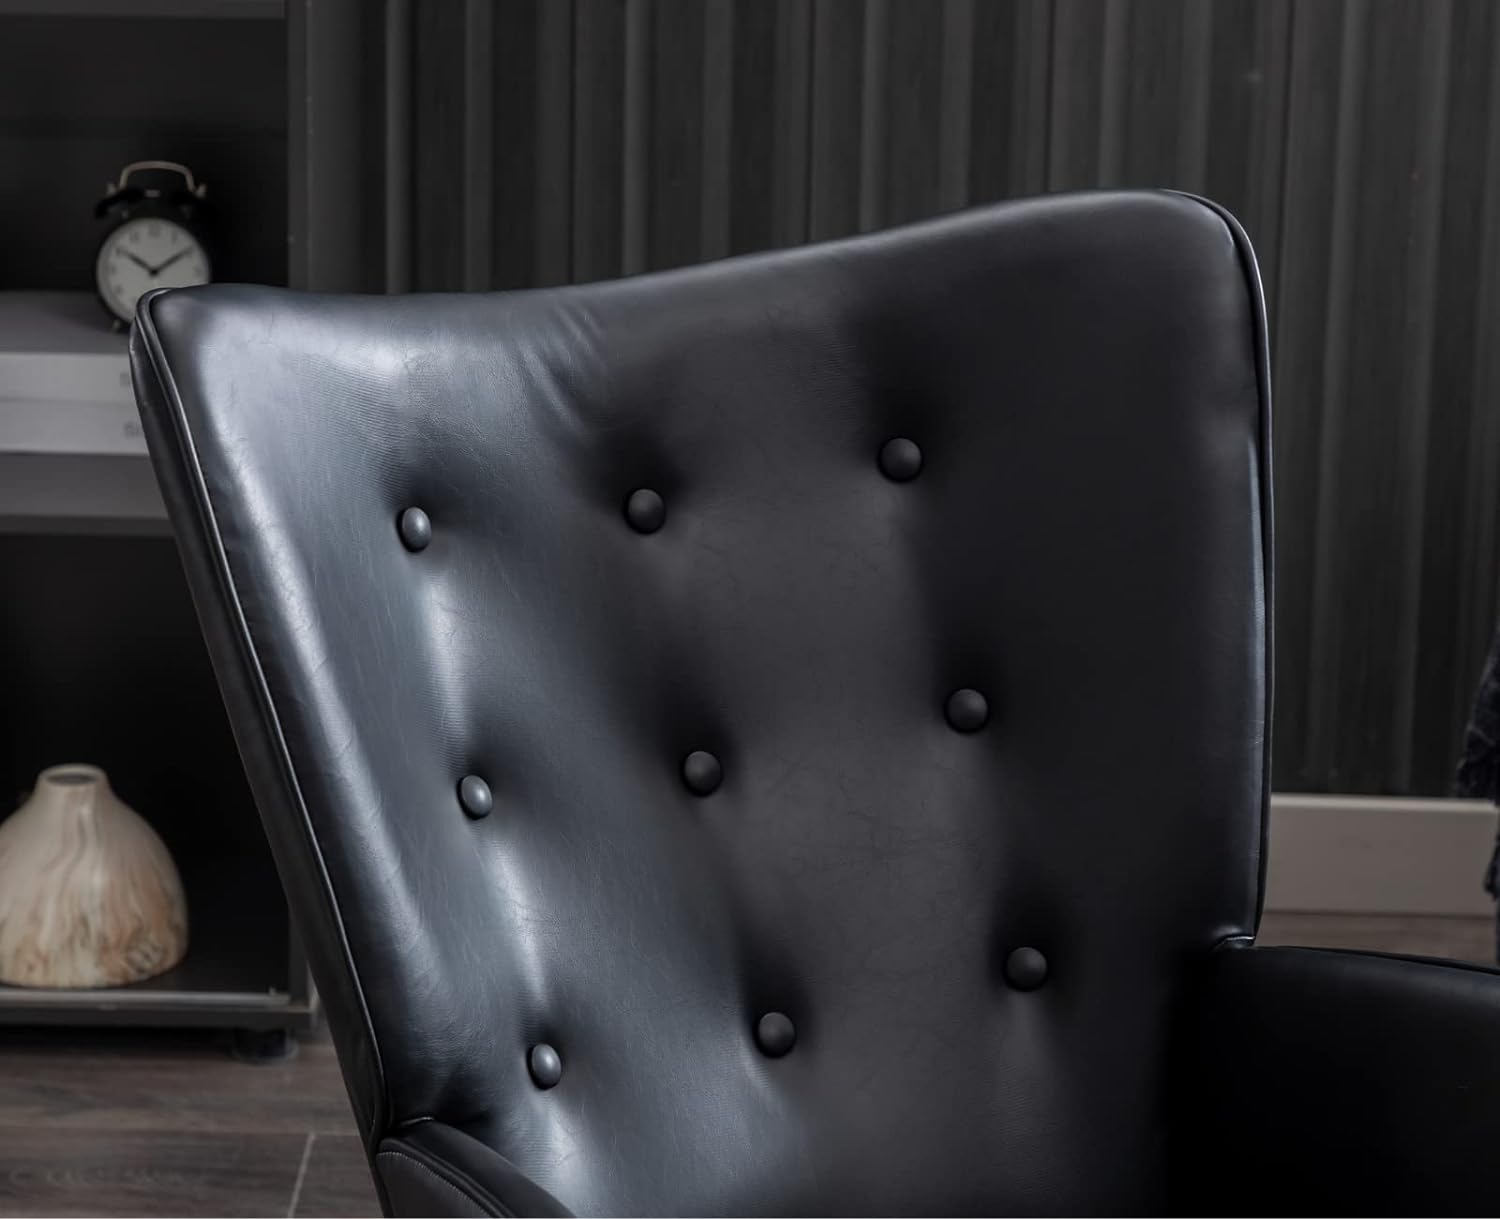  CIMOTA Mecedora de cuero para guardería, moderno sillón  copetudo con respaldo de ala, cómoda silla mecedora con asiento acolchado  grueso para guardería, dormitorio, sala de estar, piel sintética, color  negro 